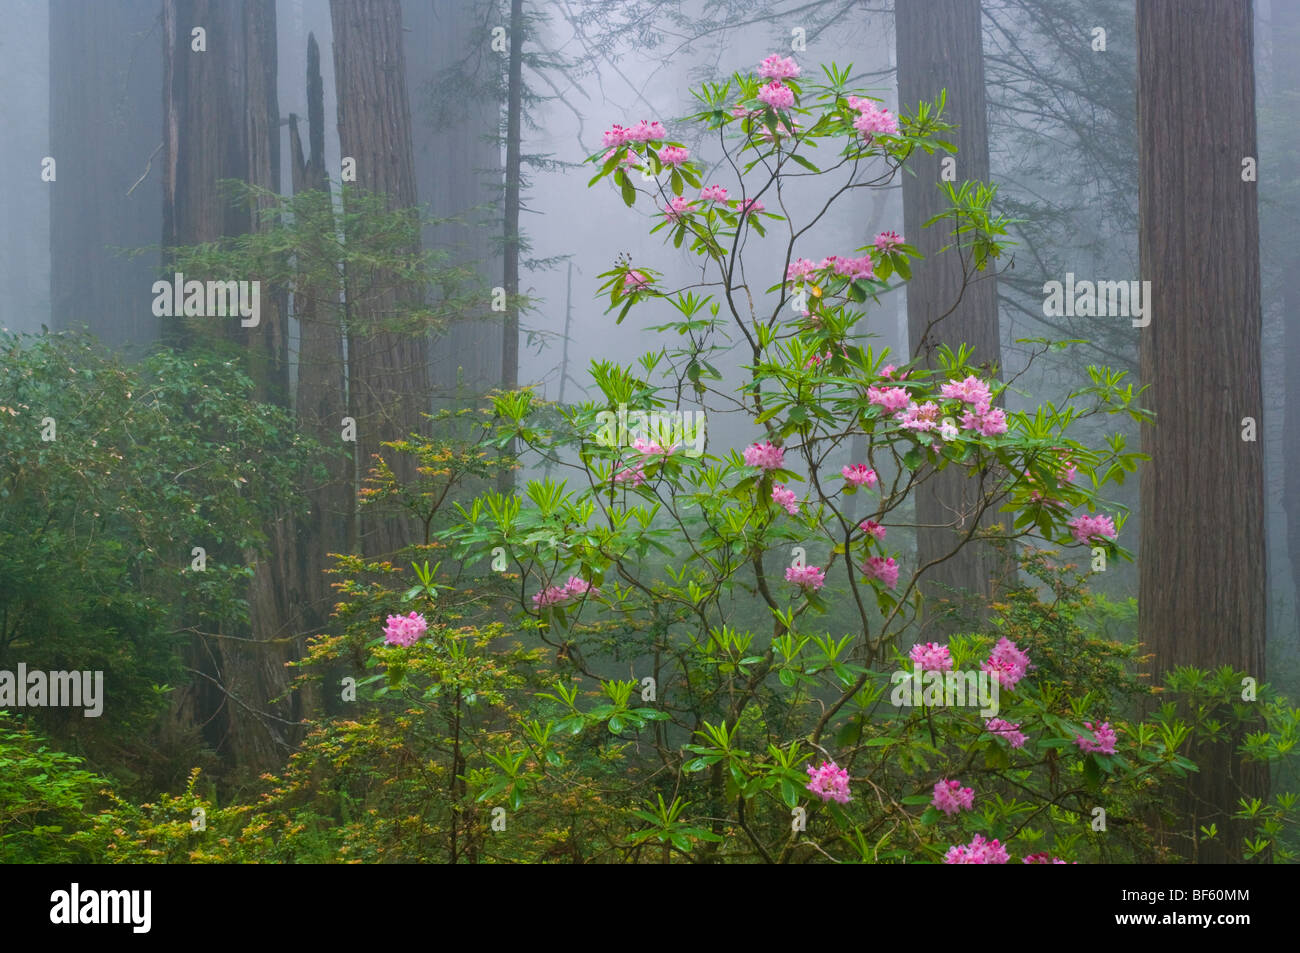 Rhododendron flores silvestres en flor, Secoyas y niebla en El Bosque, Parque Nacional Redwood, California Foto de stock